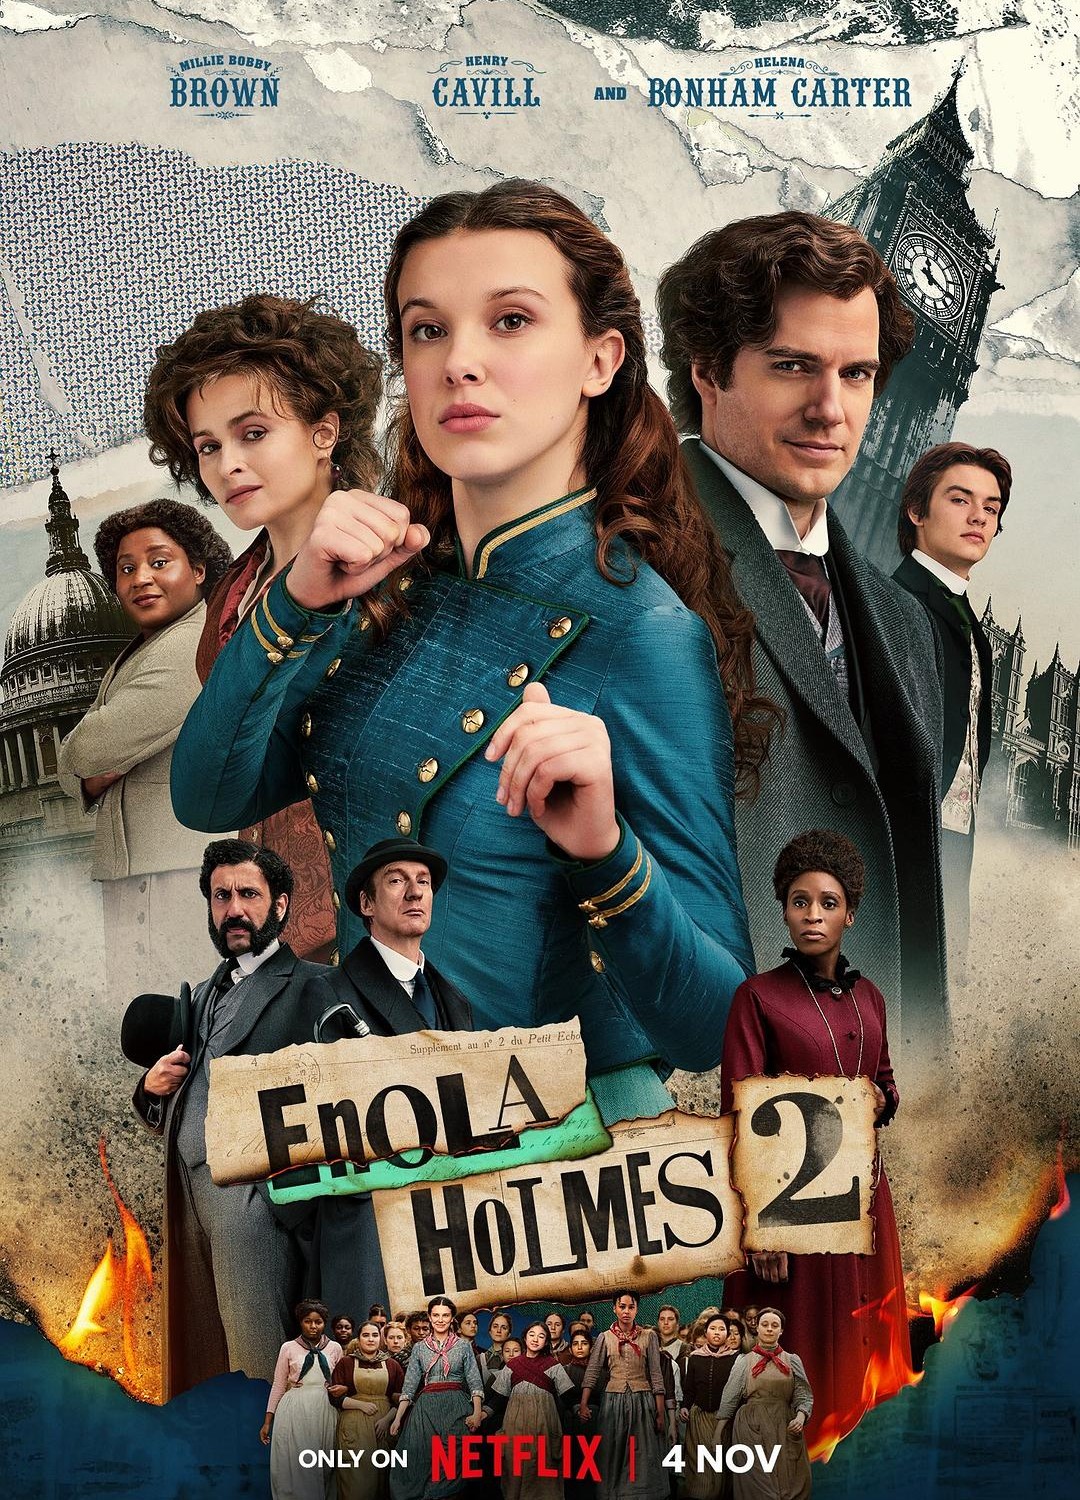 [福尔摩斯小姐：伦敦厄运 / 天才少女福尔摩斯2/福尔摩斯小姐2 Enola Holmes 2][2022][英国][剧情][英语]